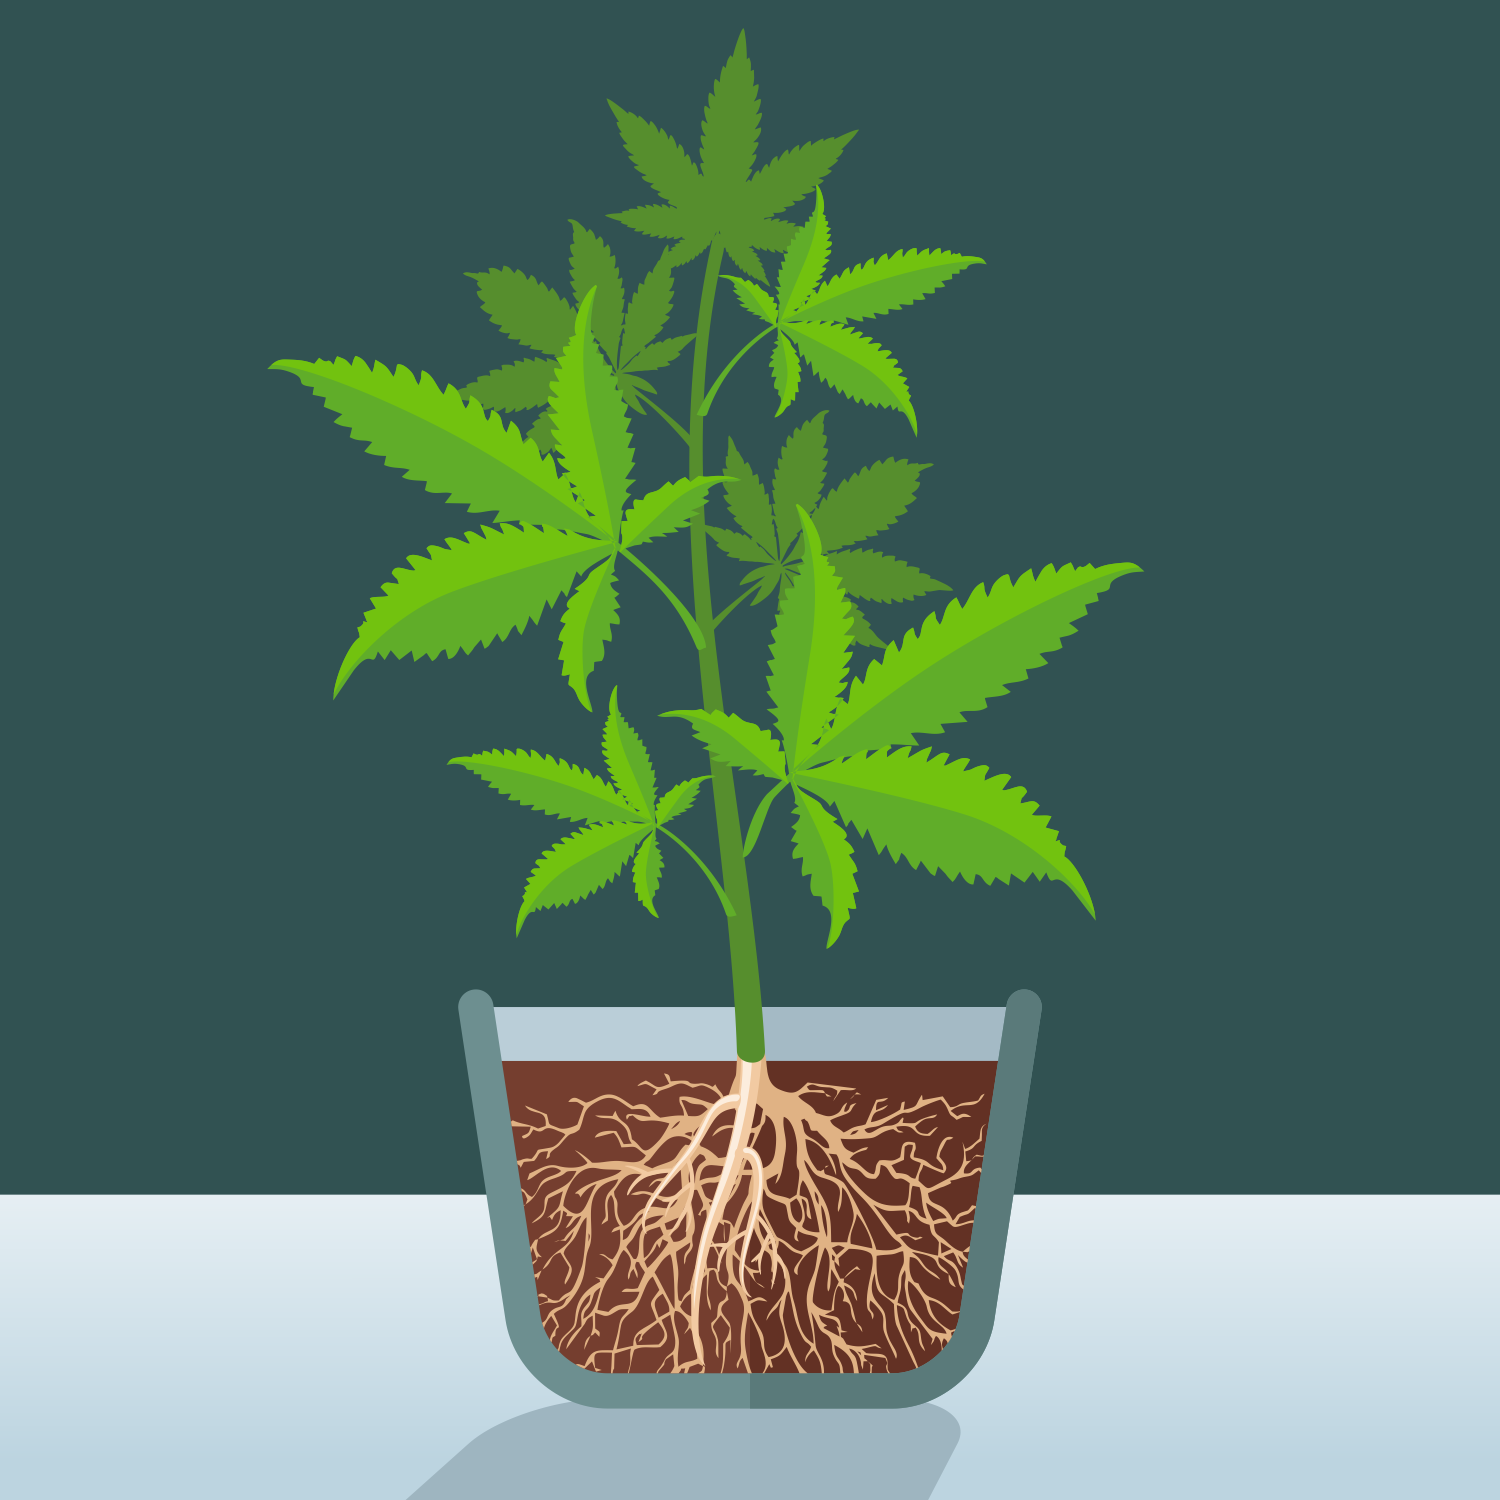 Какой горшок нужен для выращивания марихуаны семя конопли распаренное